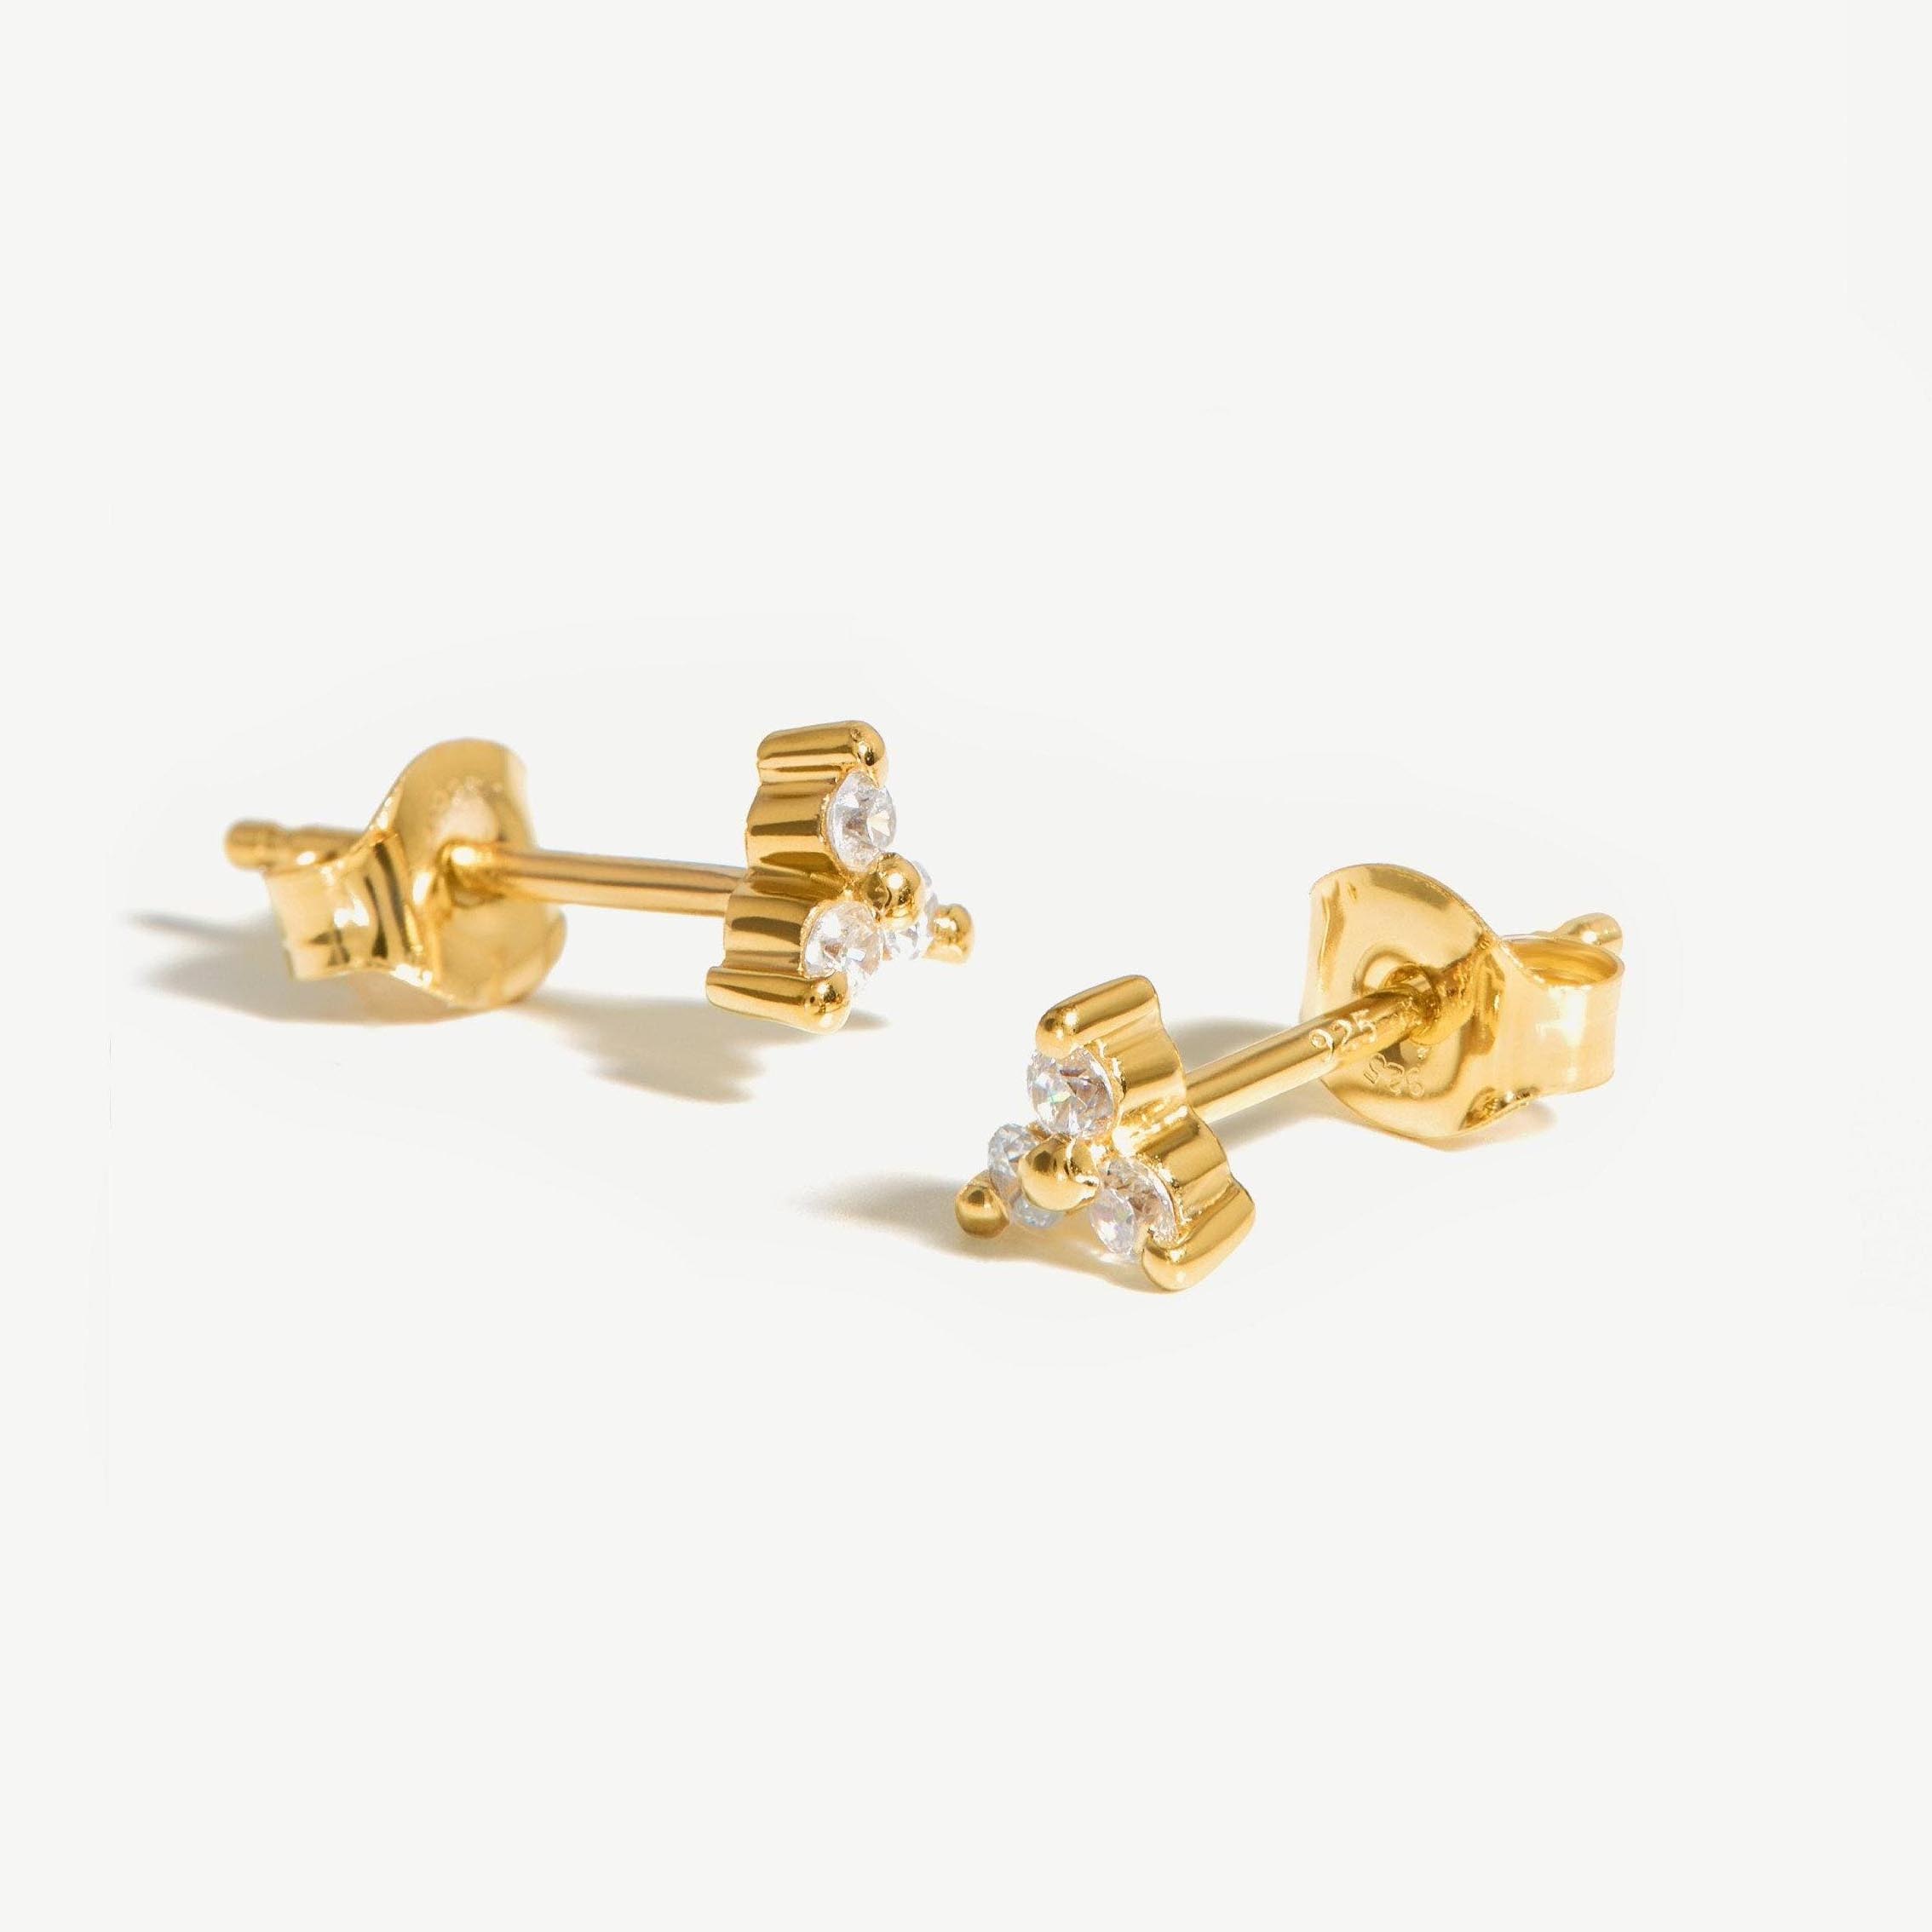 Pendiente al por mayor personalizado del cliente de joyería llena de oro brasileño en plata 925 y cobre